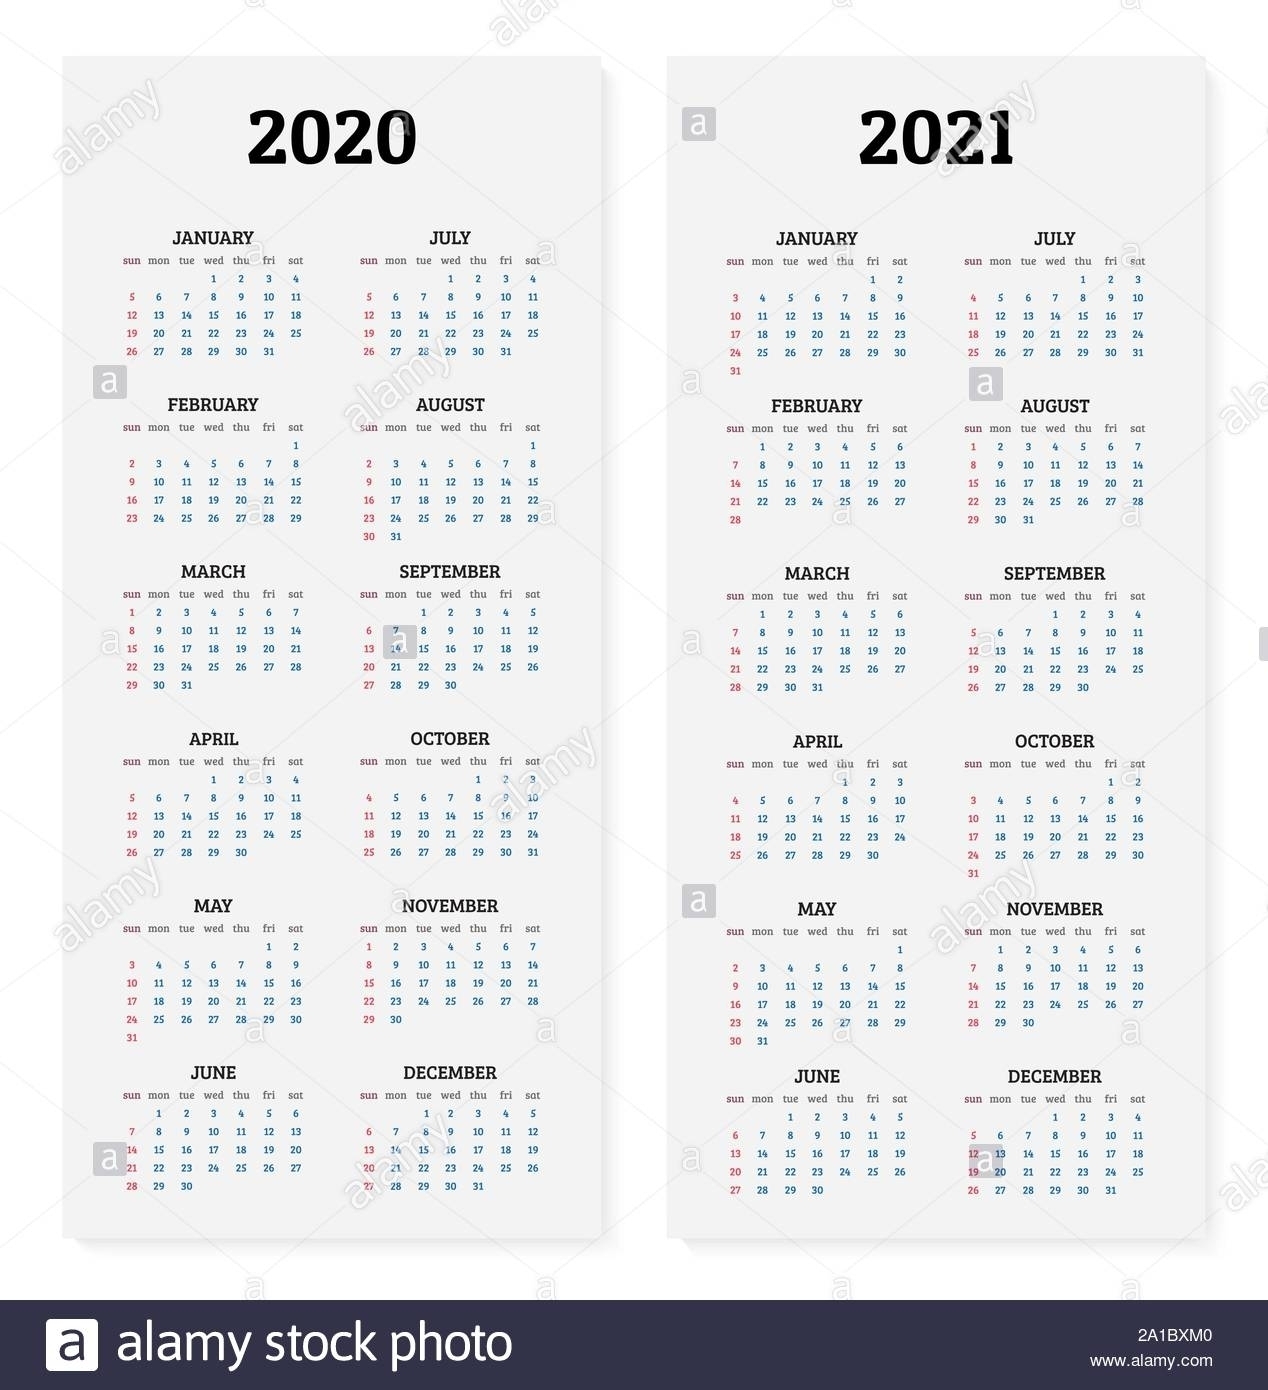 Calendario Juliano 2020 | Calendar Template 2020